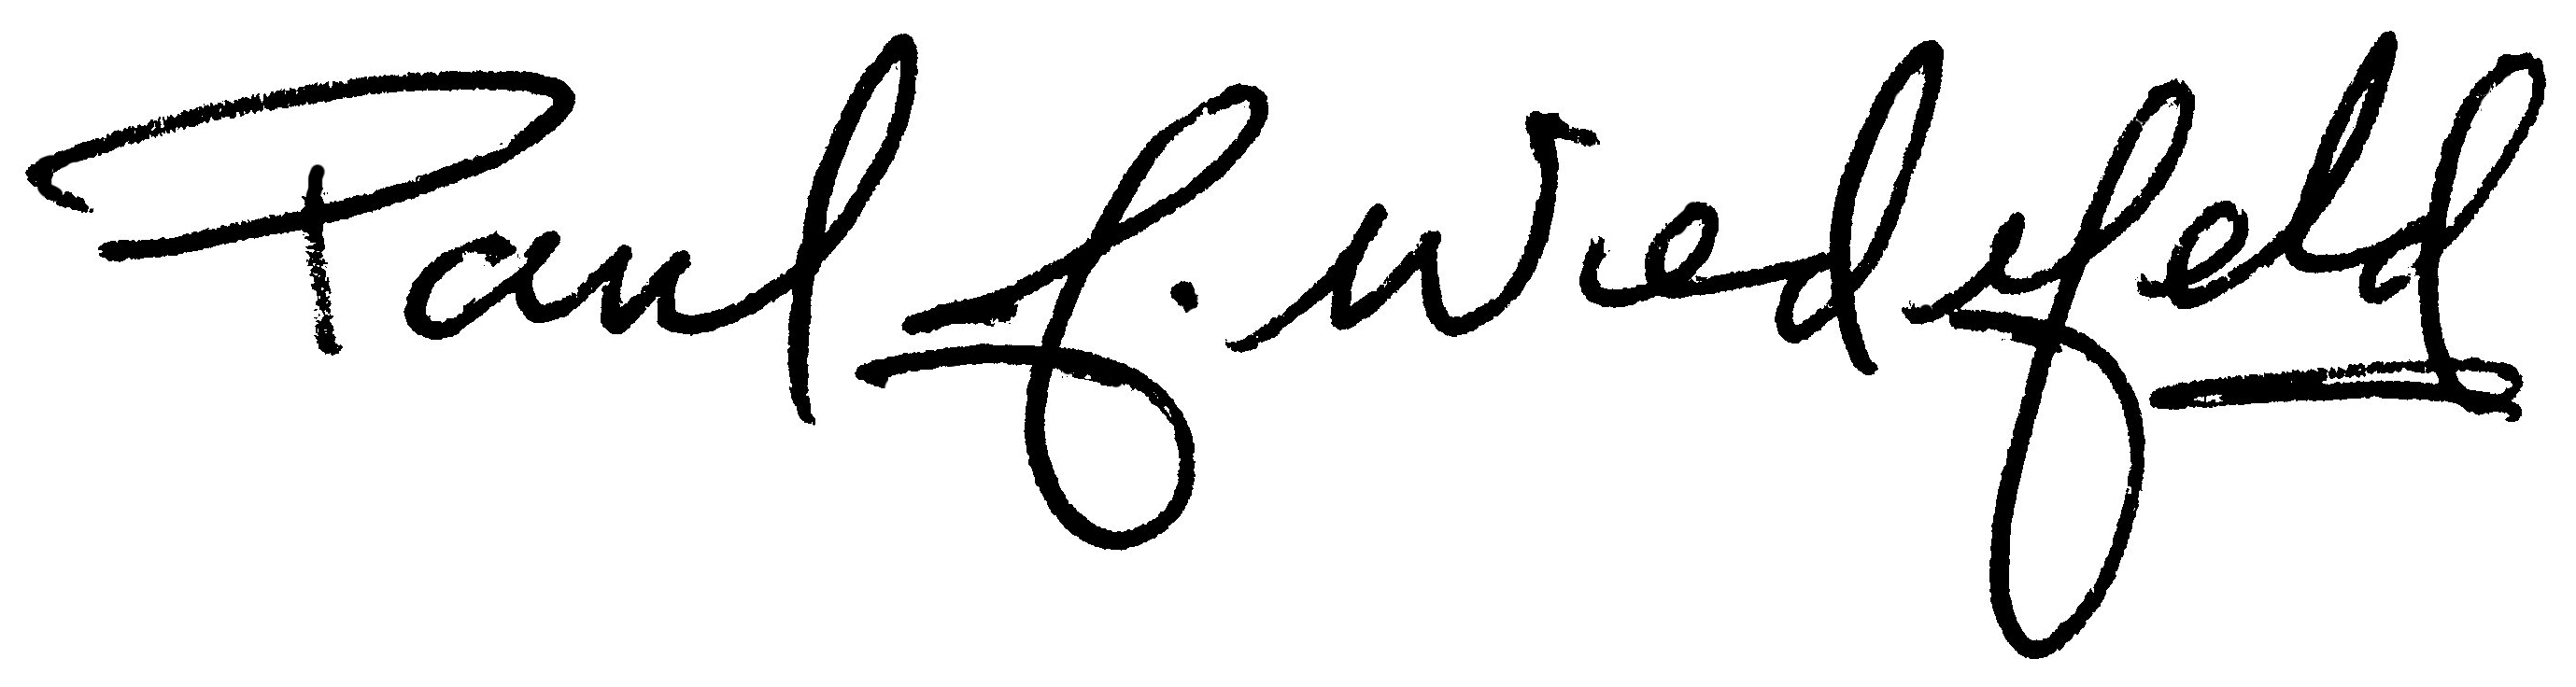 Paul J. Wiedefeld digital signature